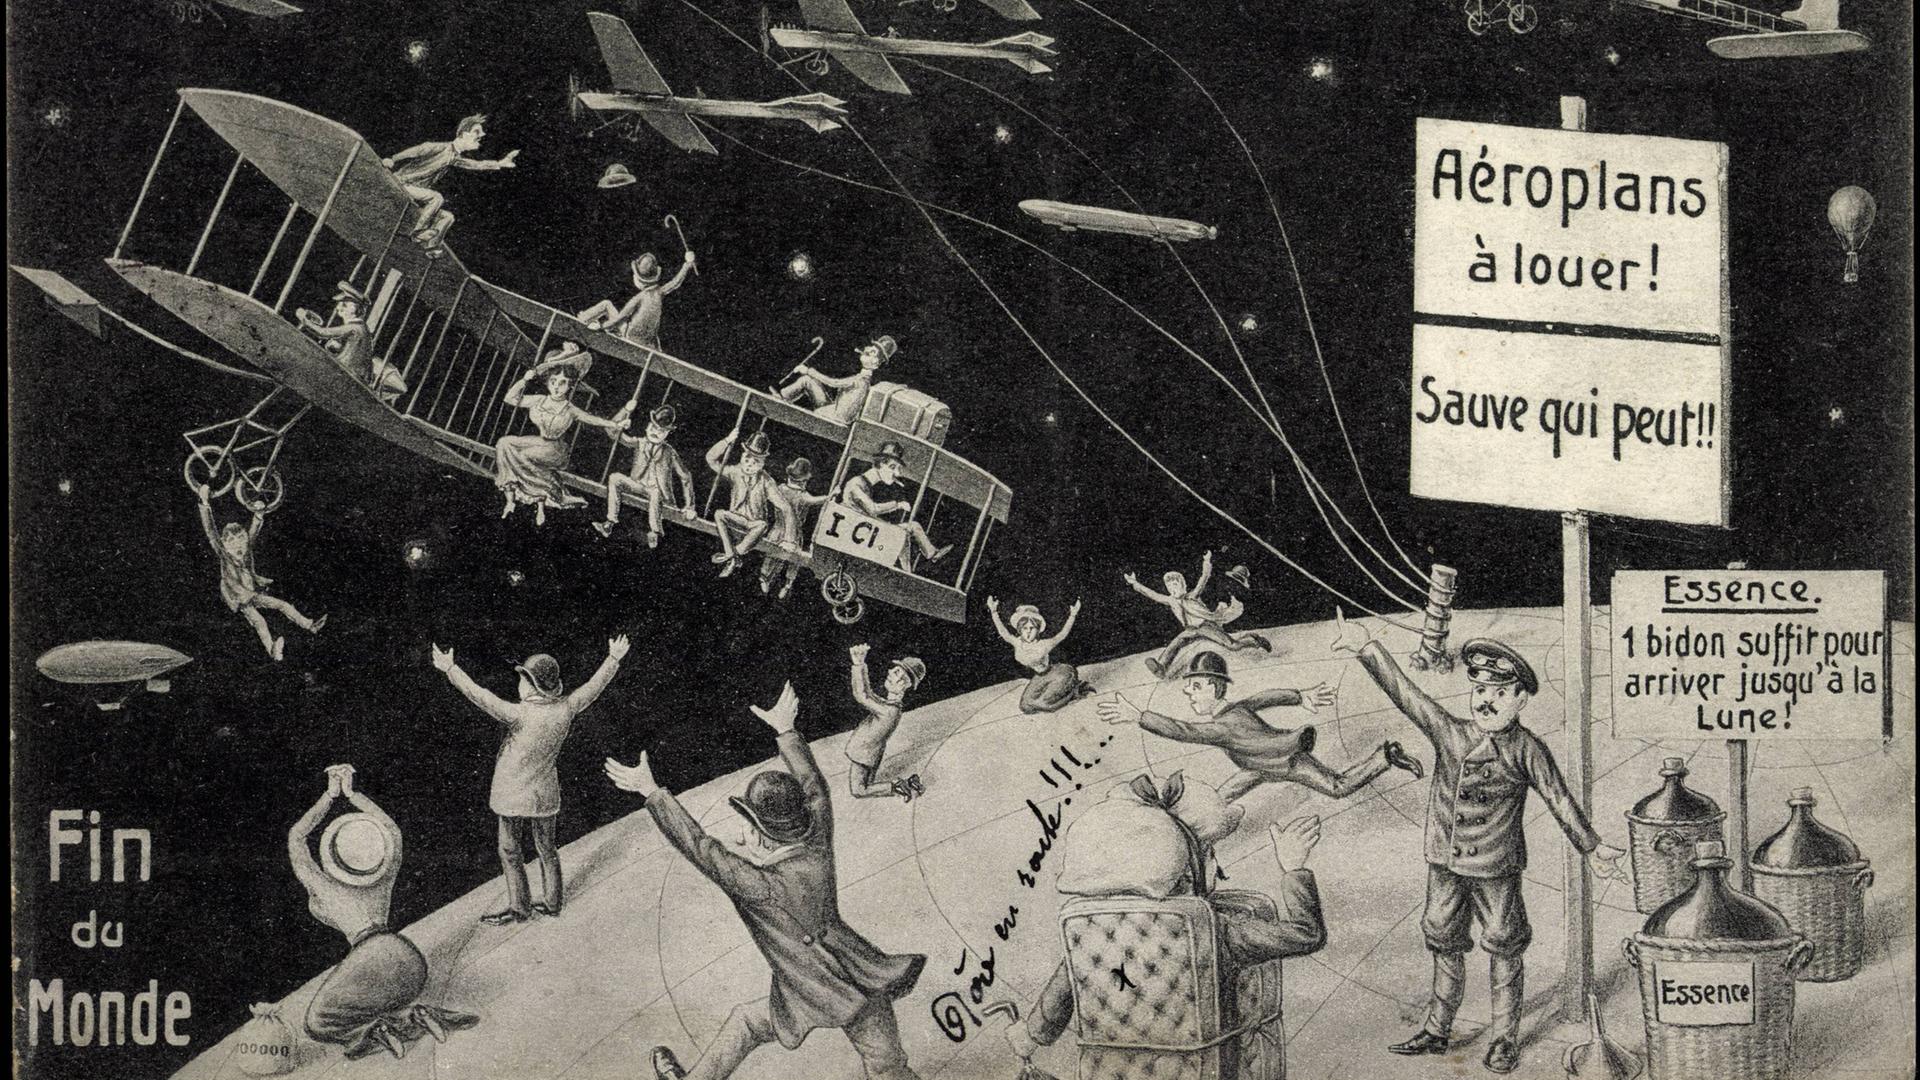 Schwarz-weiß Zeichnung zum Thema Halleyscher Komet. Menschliche Figuren und Fluggeräte taumeln erschrocken auf der Erde